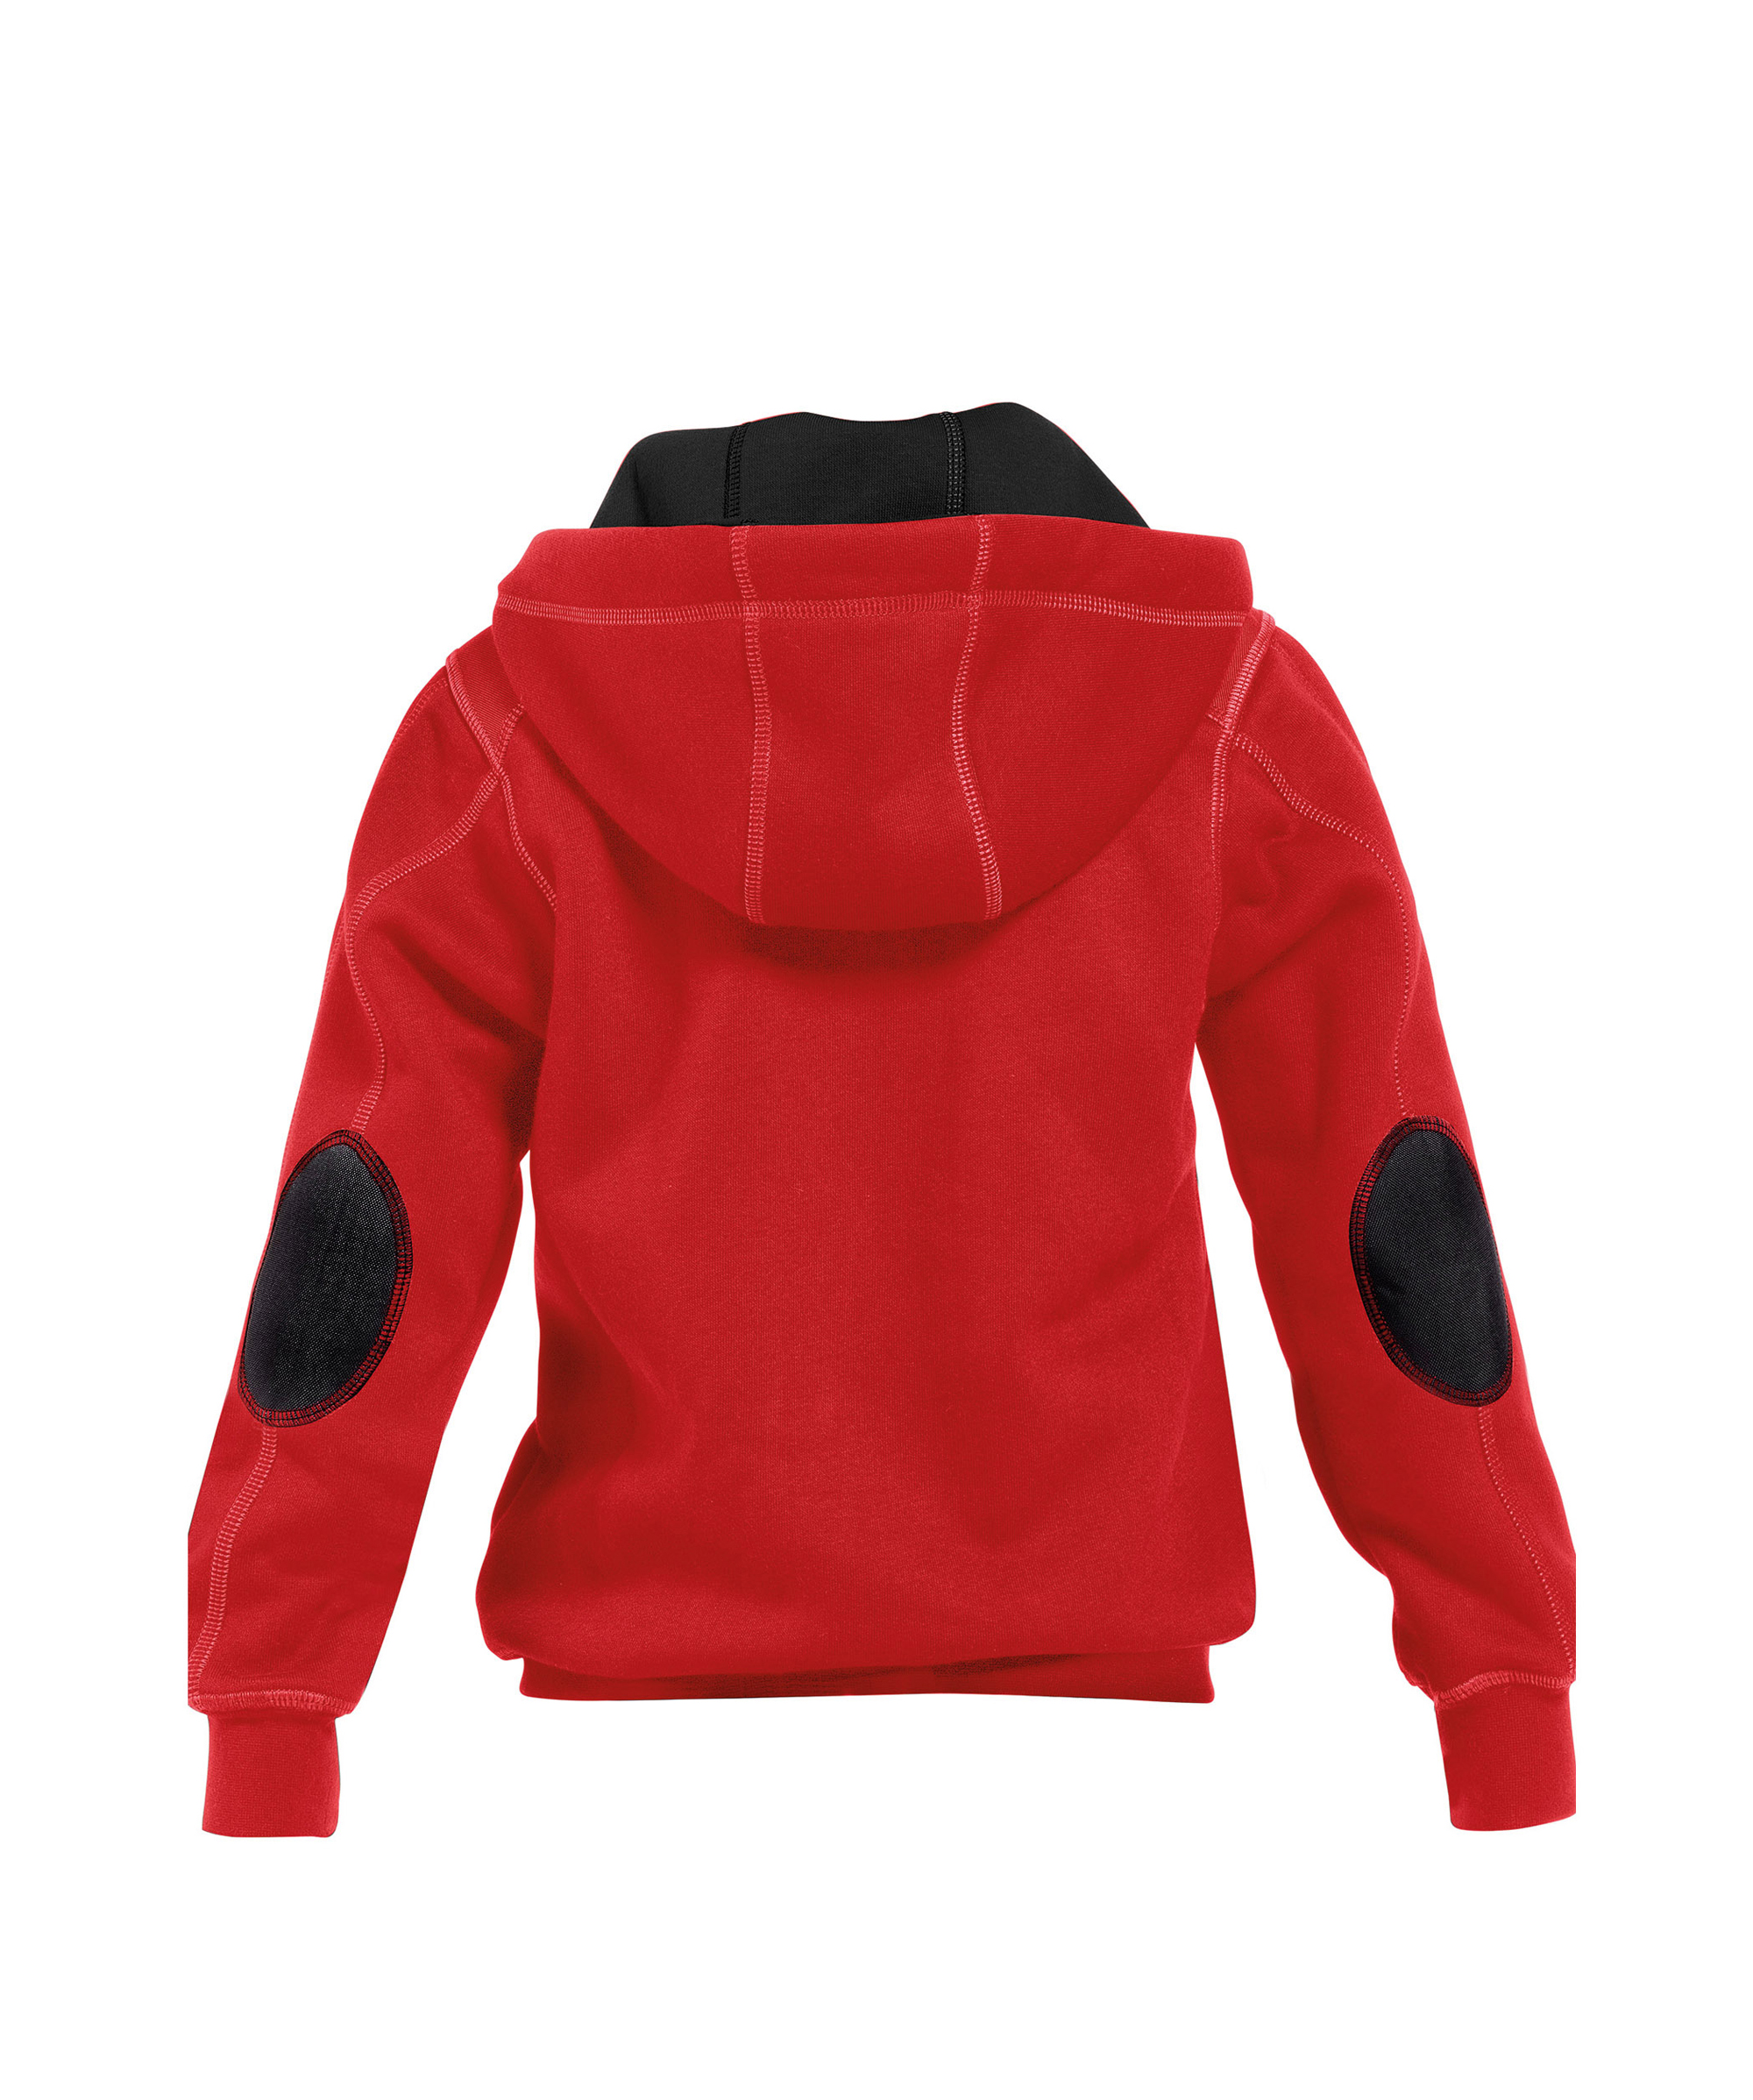 watson-kids_hooded-sweatshirt_red-black_back.jpg